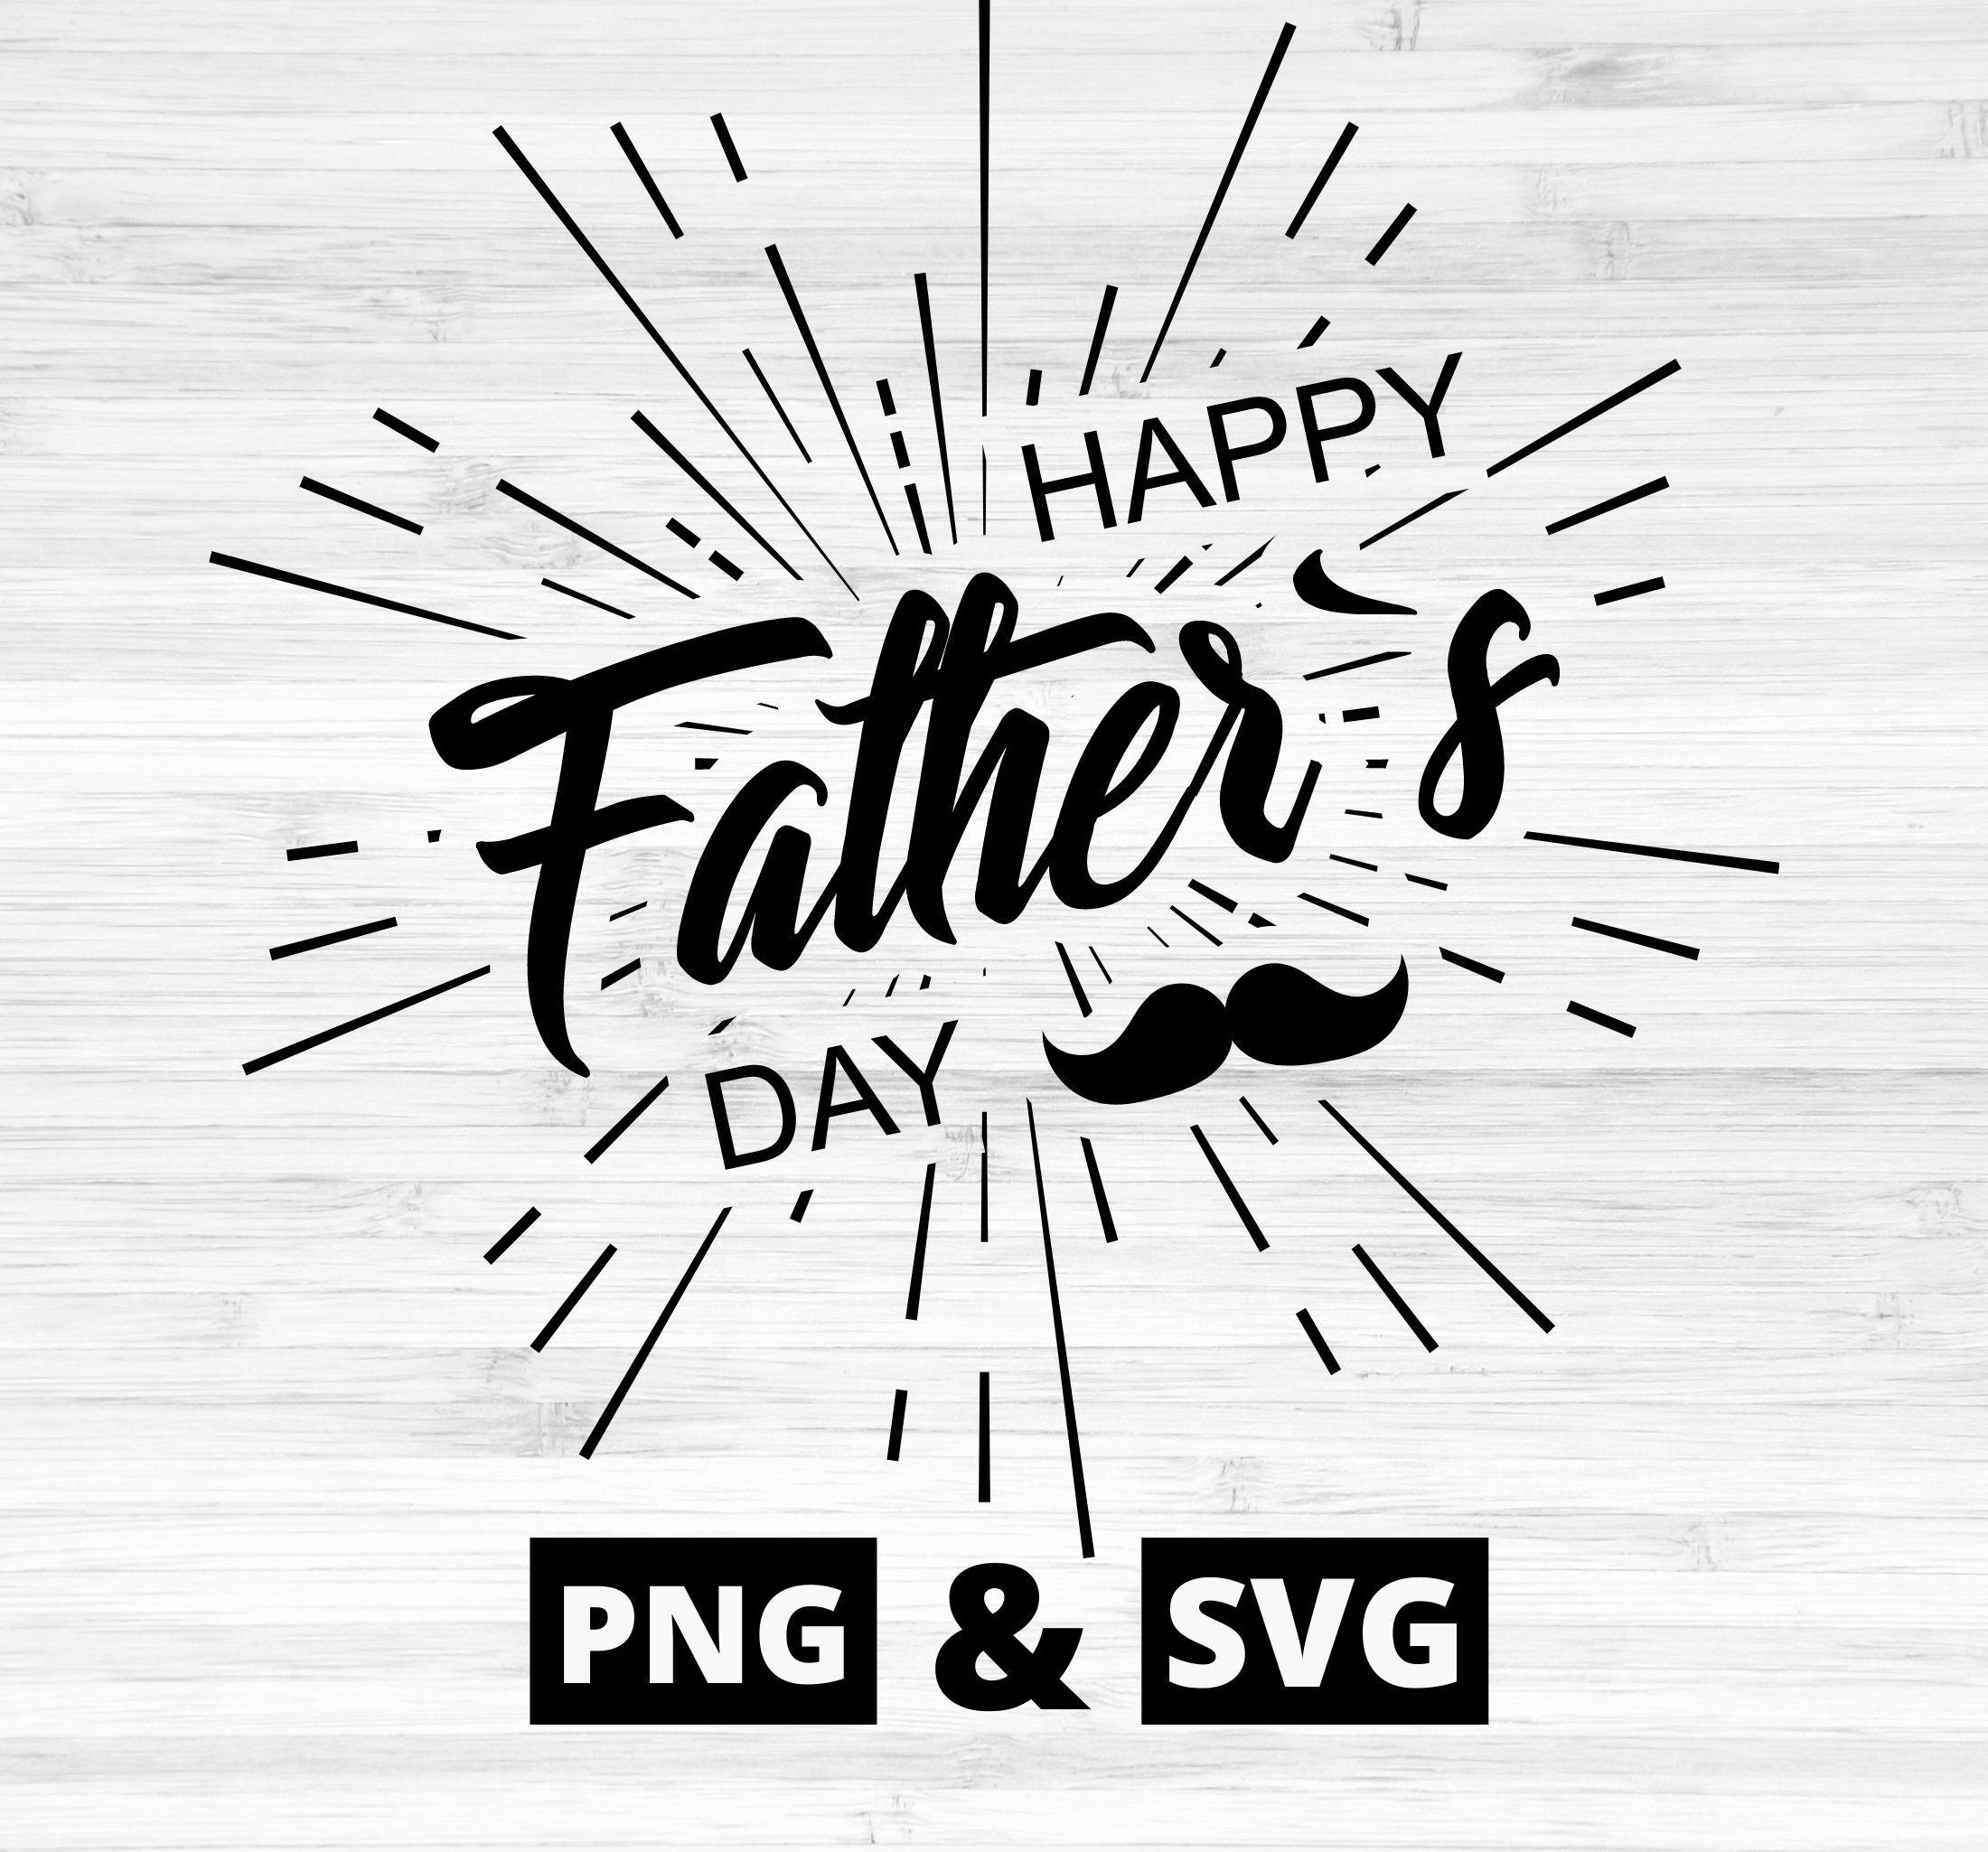 Happy Fathers Day SVG Fathers Day 2021 SVG Fathers Day SVG | Etsy